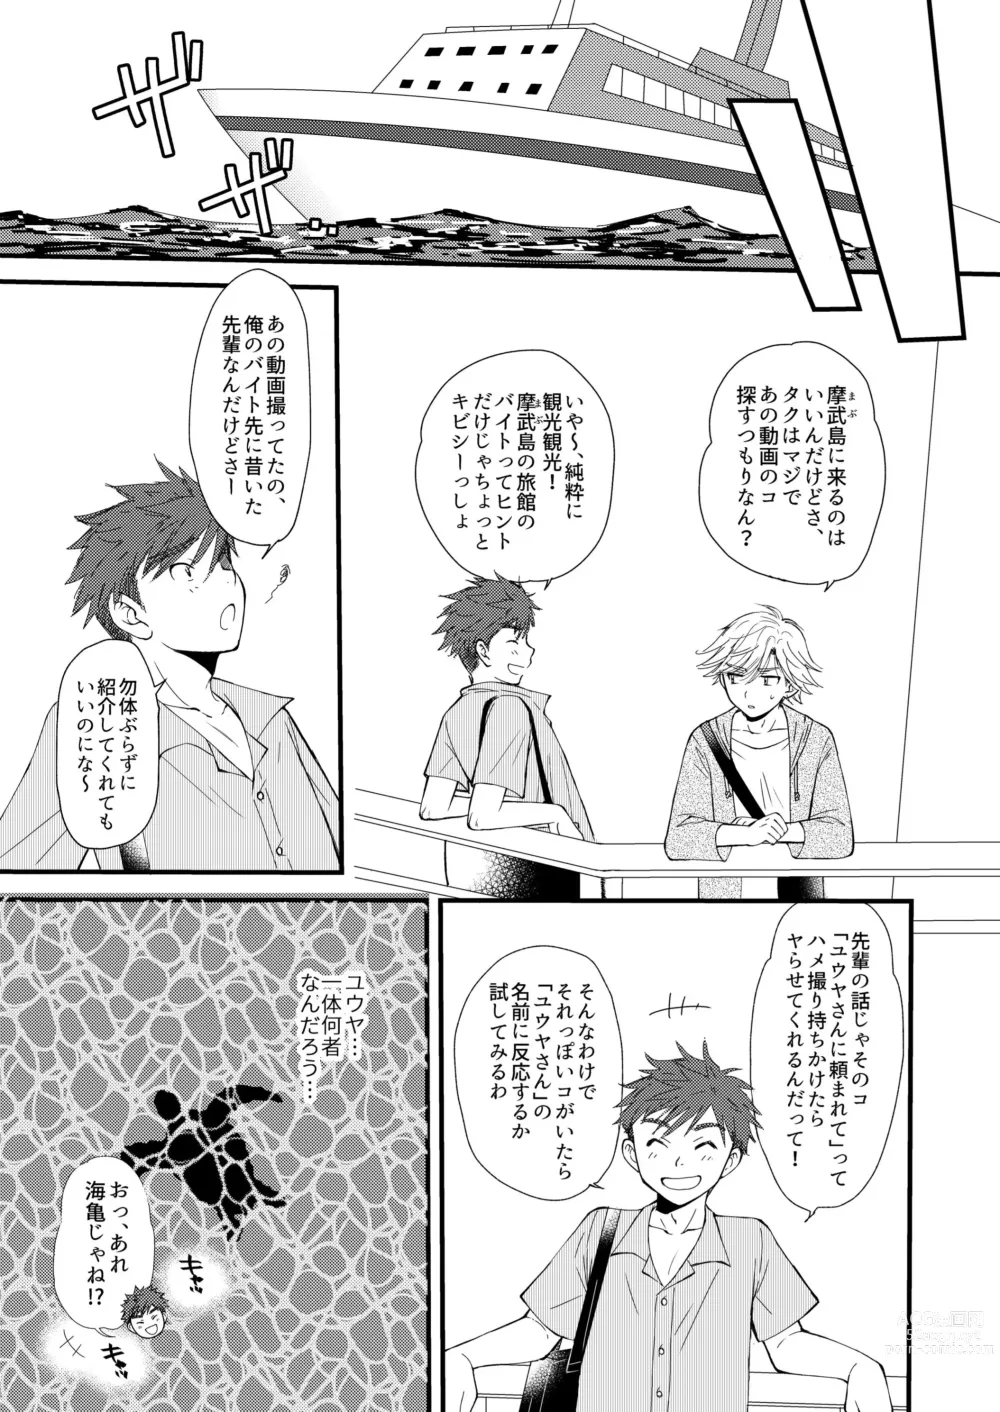 Page 9 of doujinshi Oitekita Umi